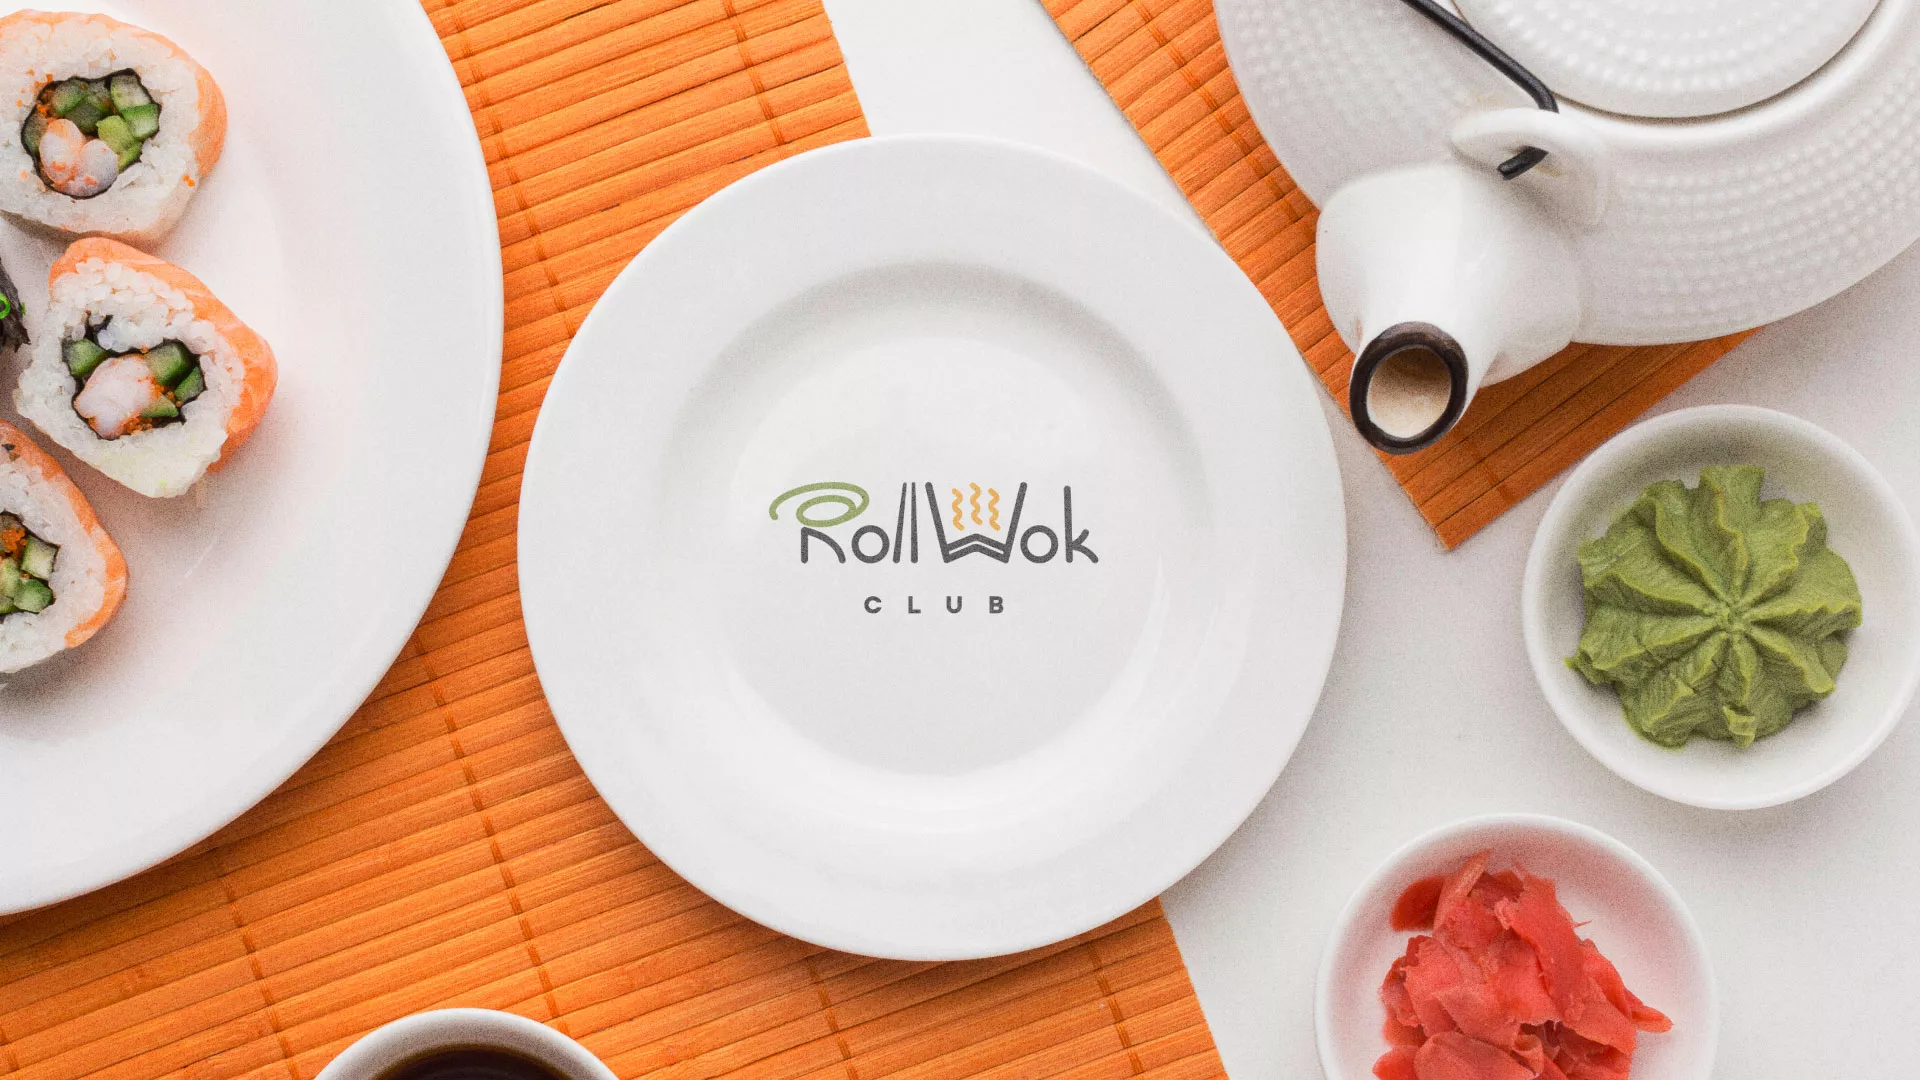 Разработка логотипа и фирменного стиля суши-бара «Roll Wok Club» в Тосно